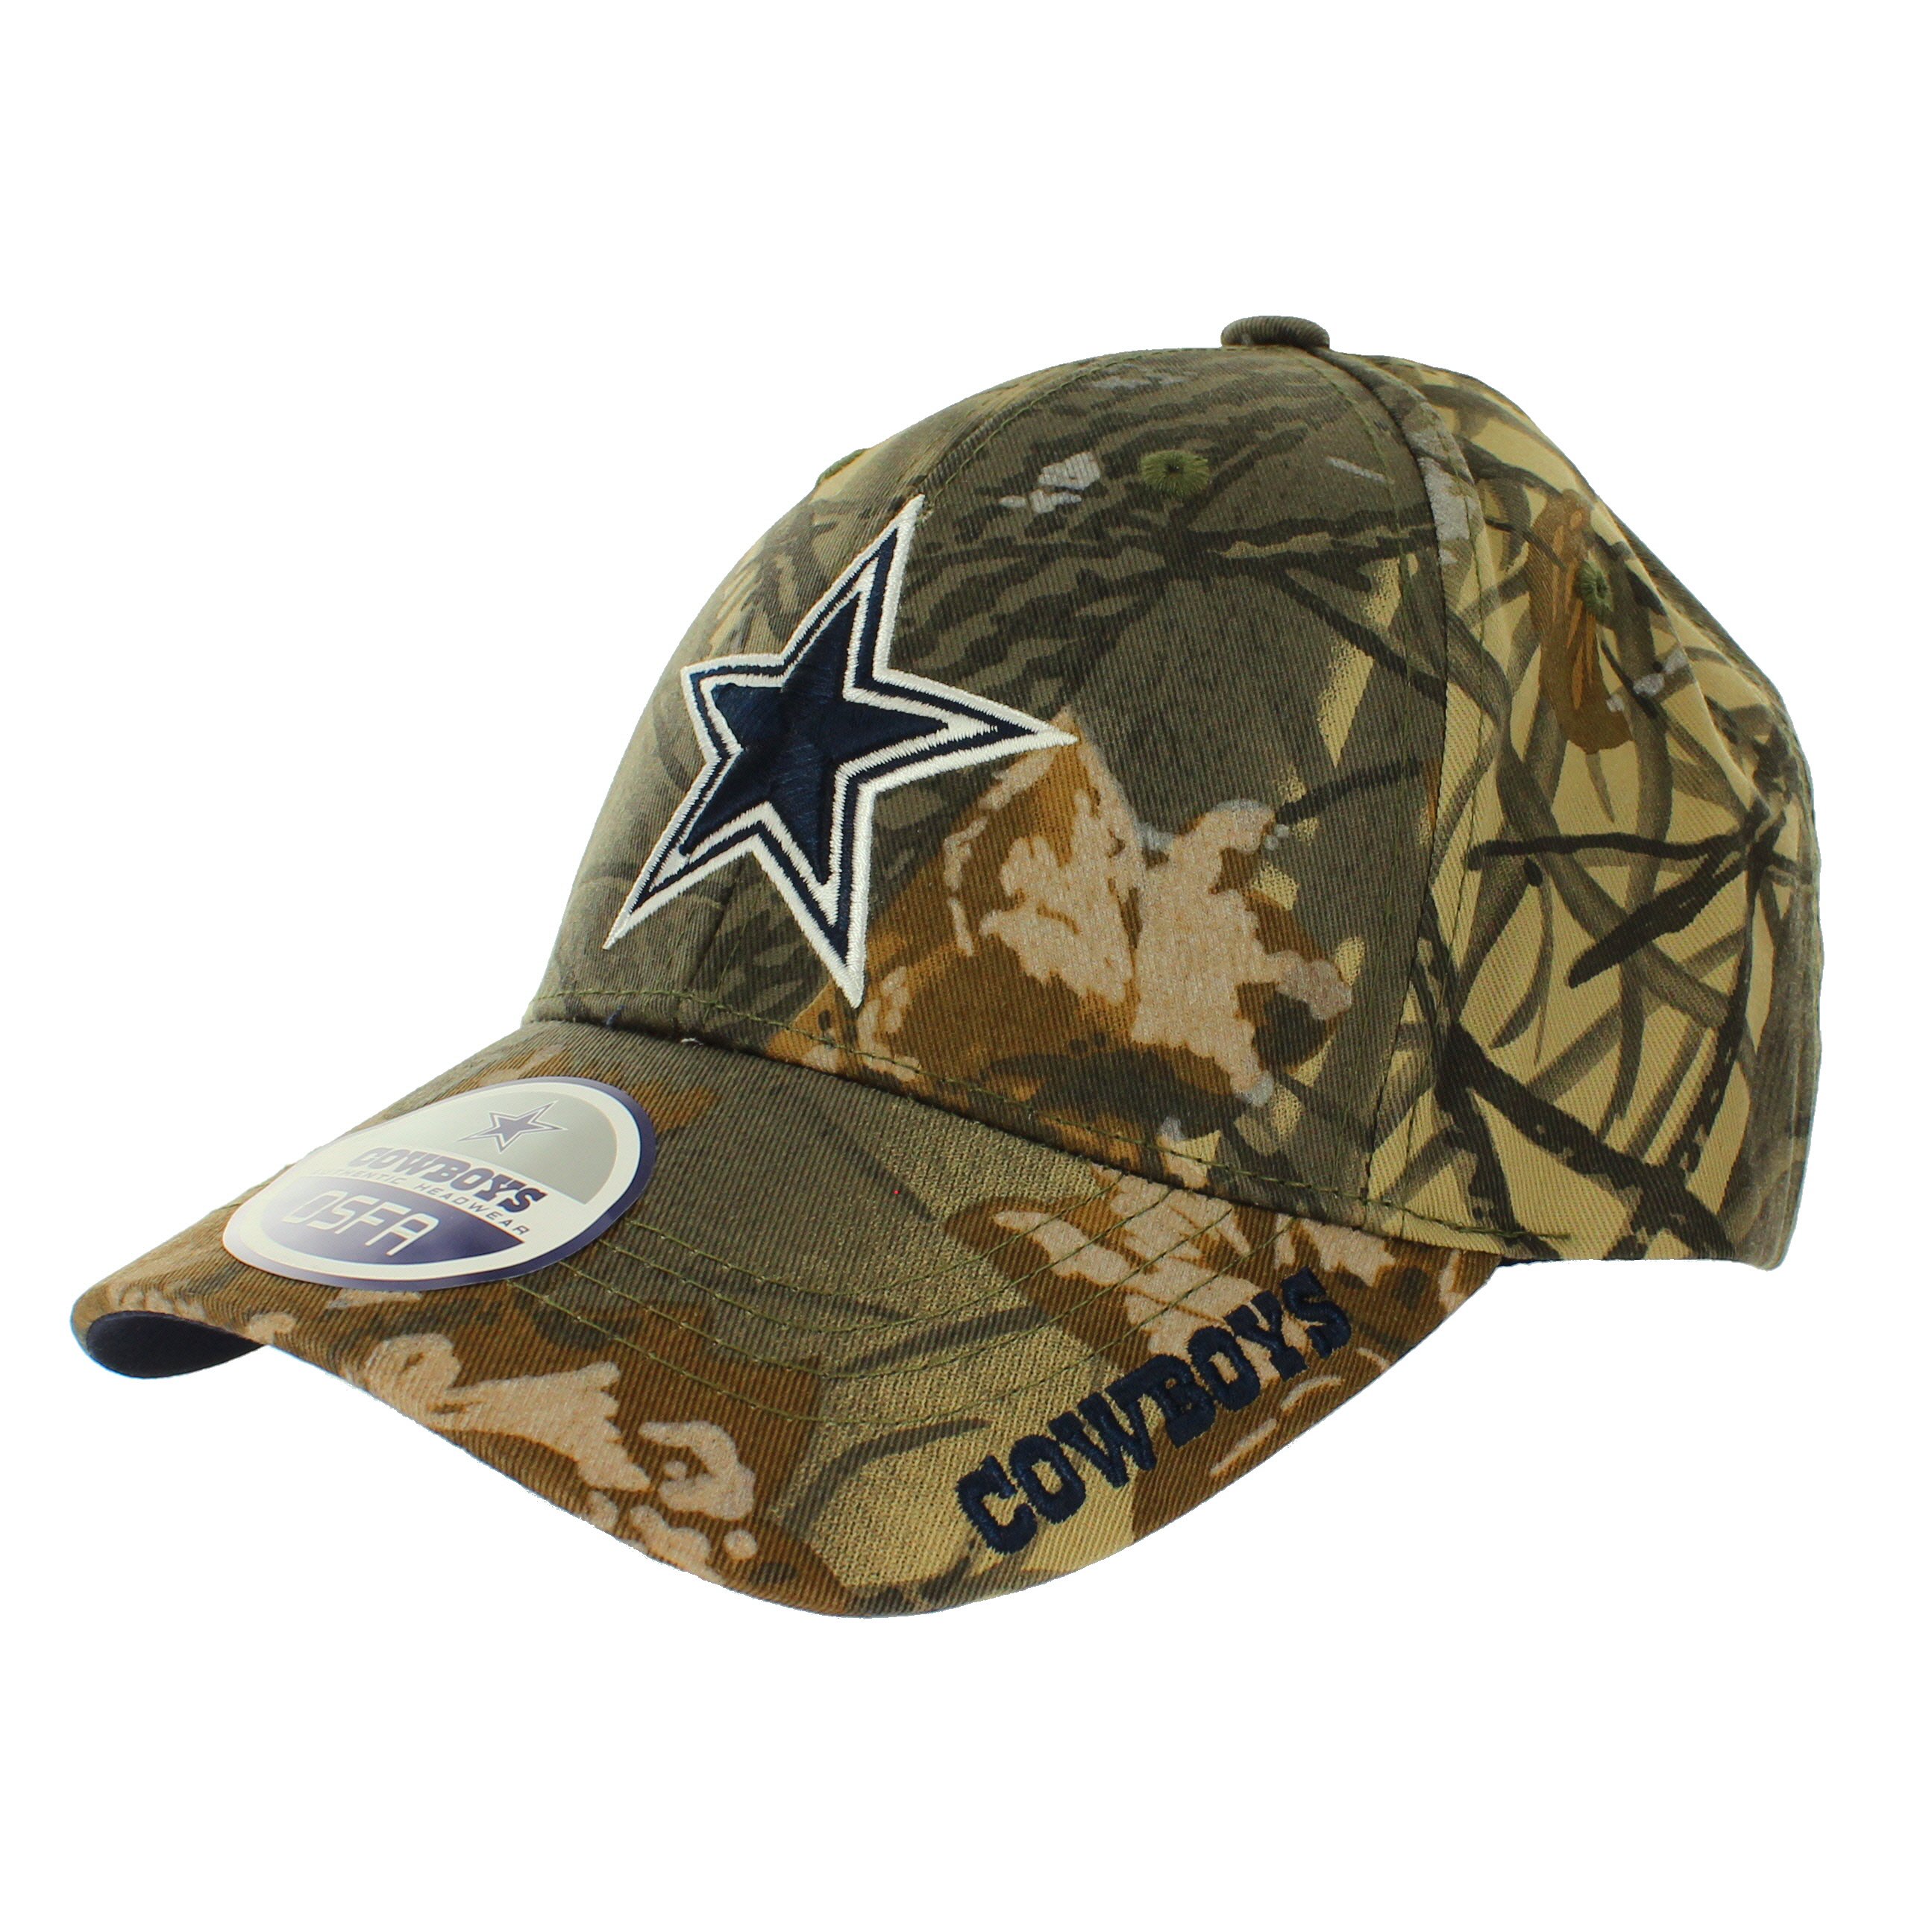 Dallas Cowboys Men's Camo Cap - Shop Team Apparel at H-E-B